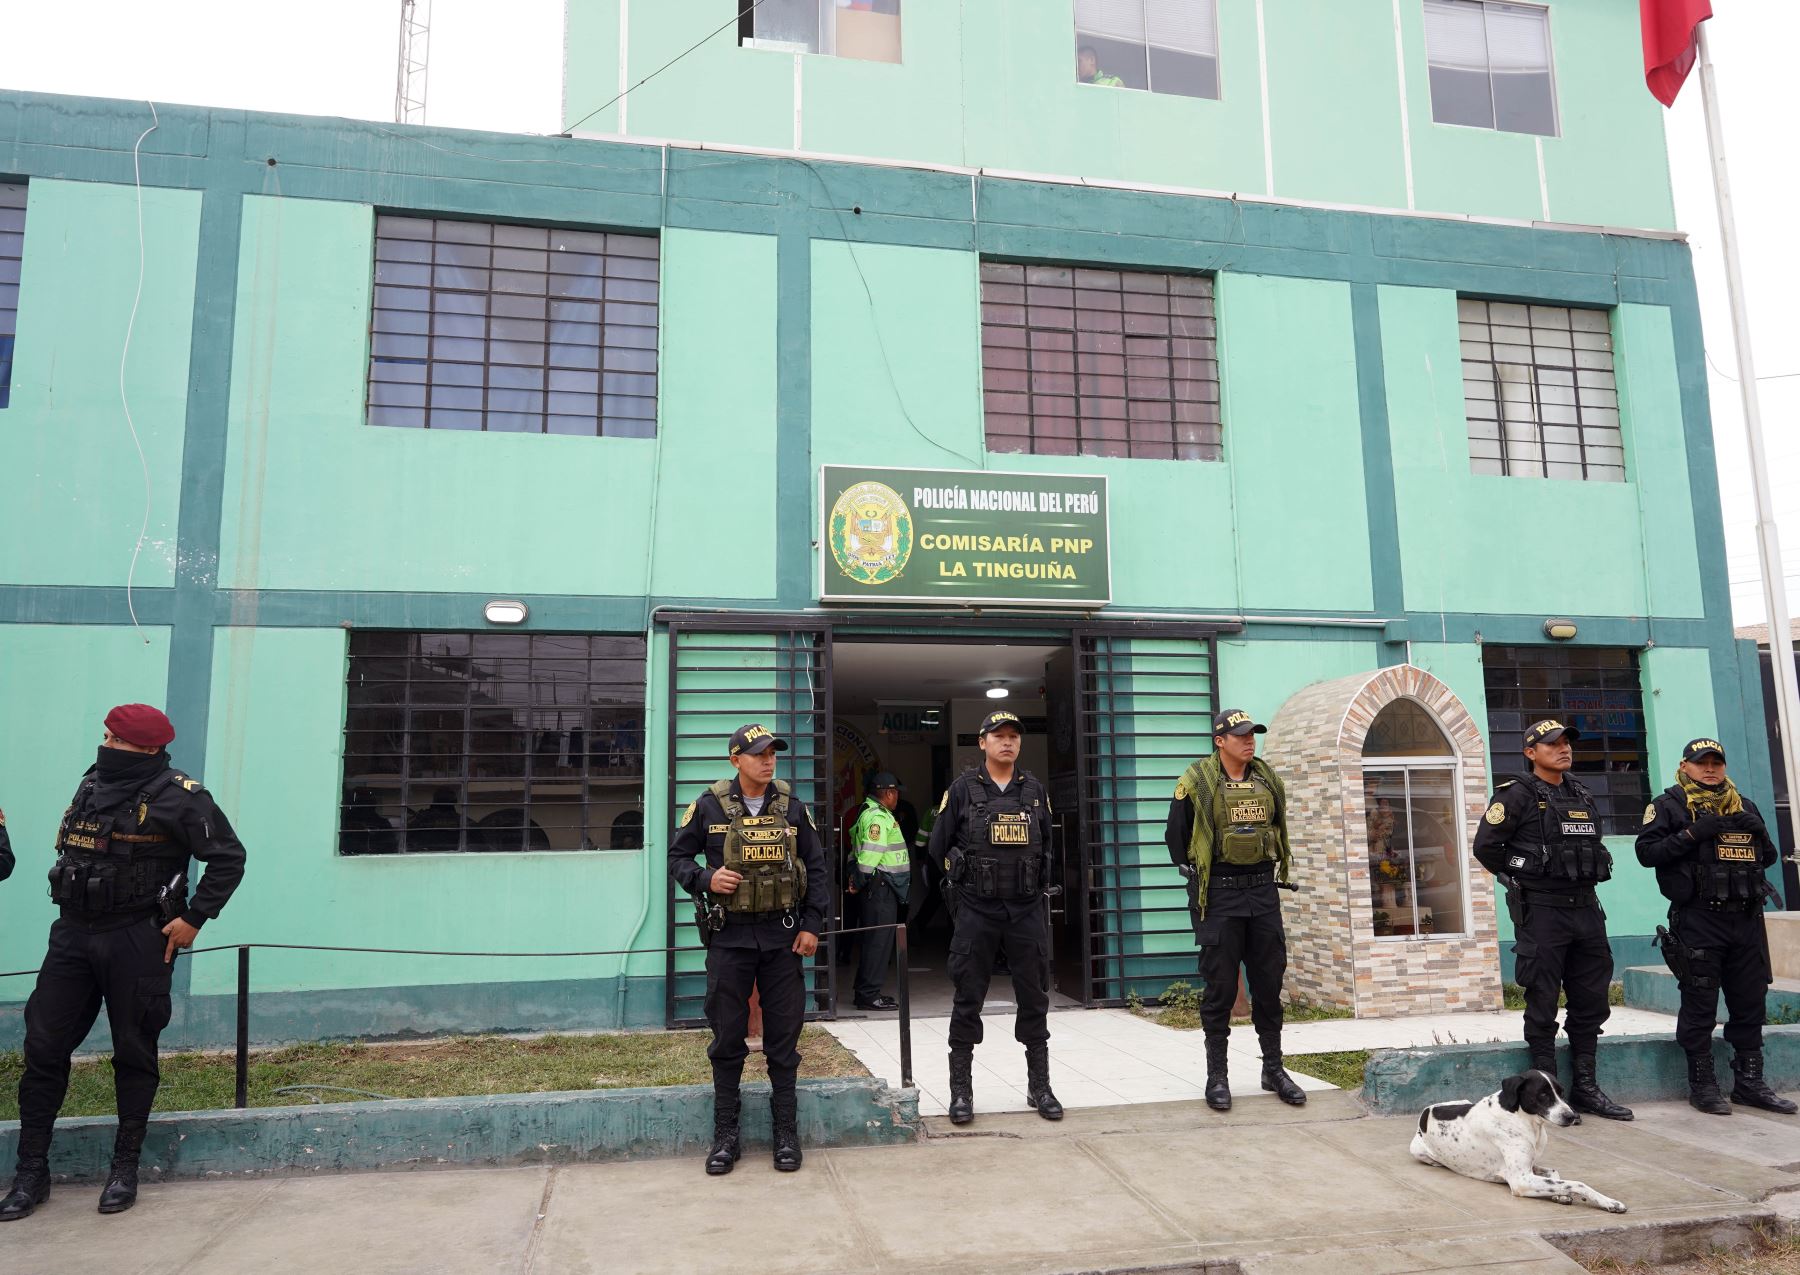 Autoridades detuvieron al comisario y a un suboficial PNP de la comisaría de La Tinguiña, en Ica, por estar implicados en un presunto delito de cohecho pasivo. Foto: Genry Bautista